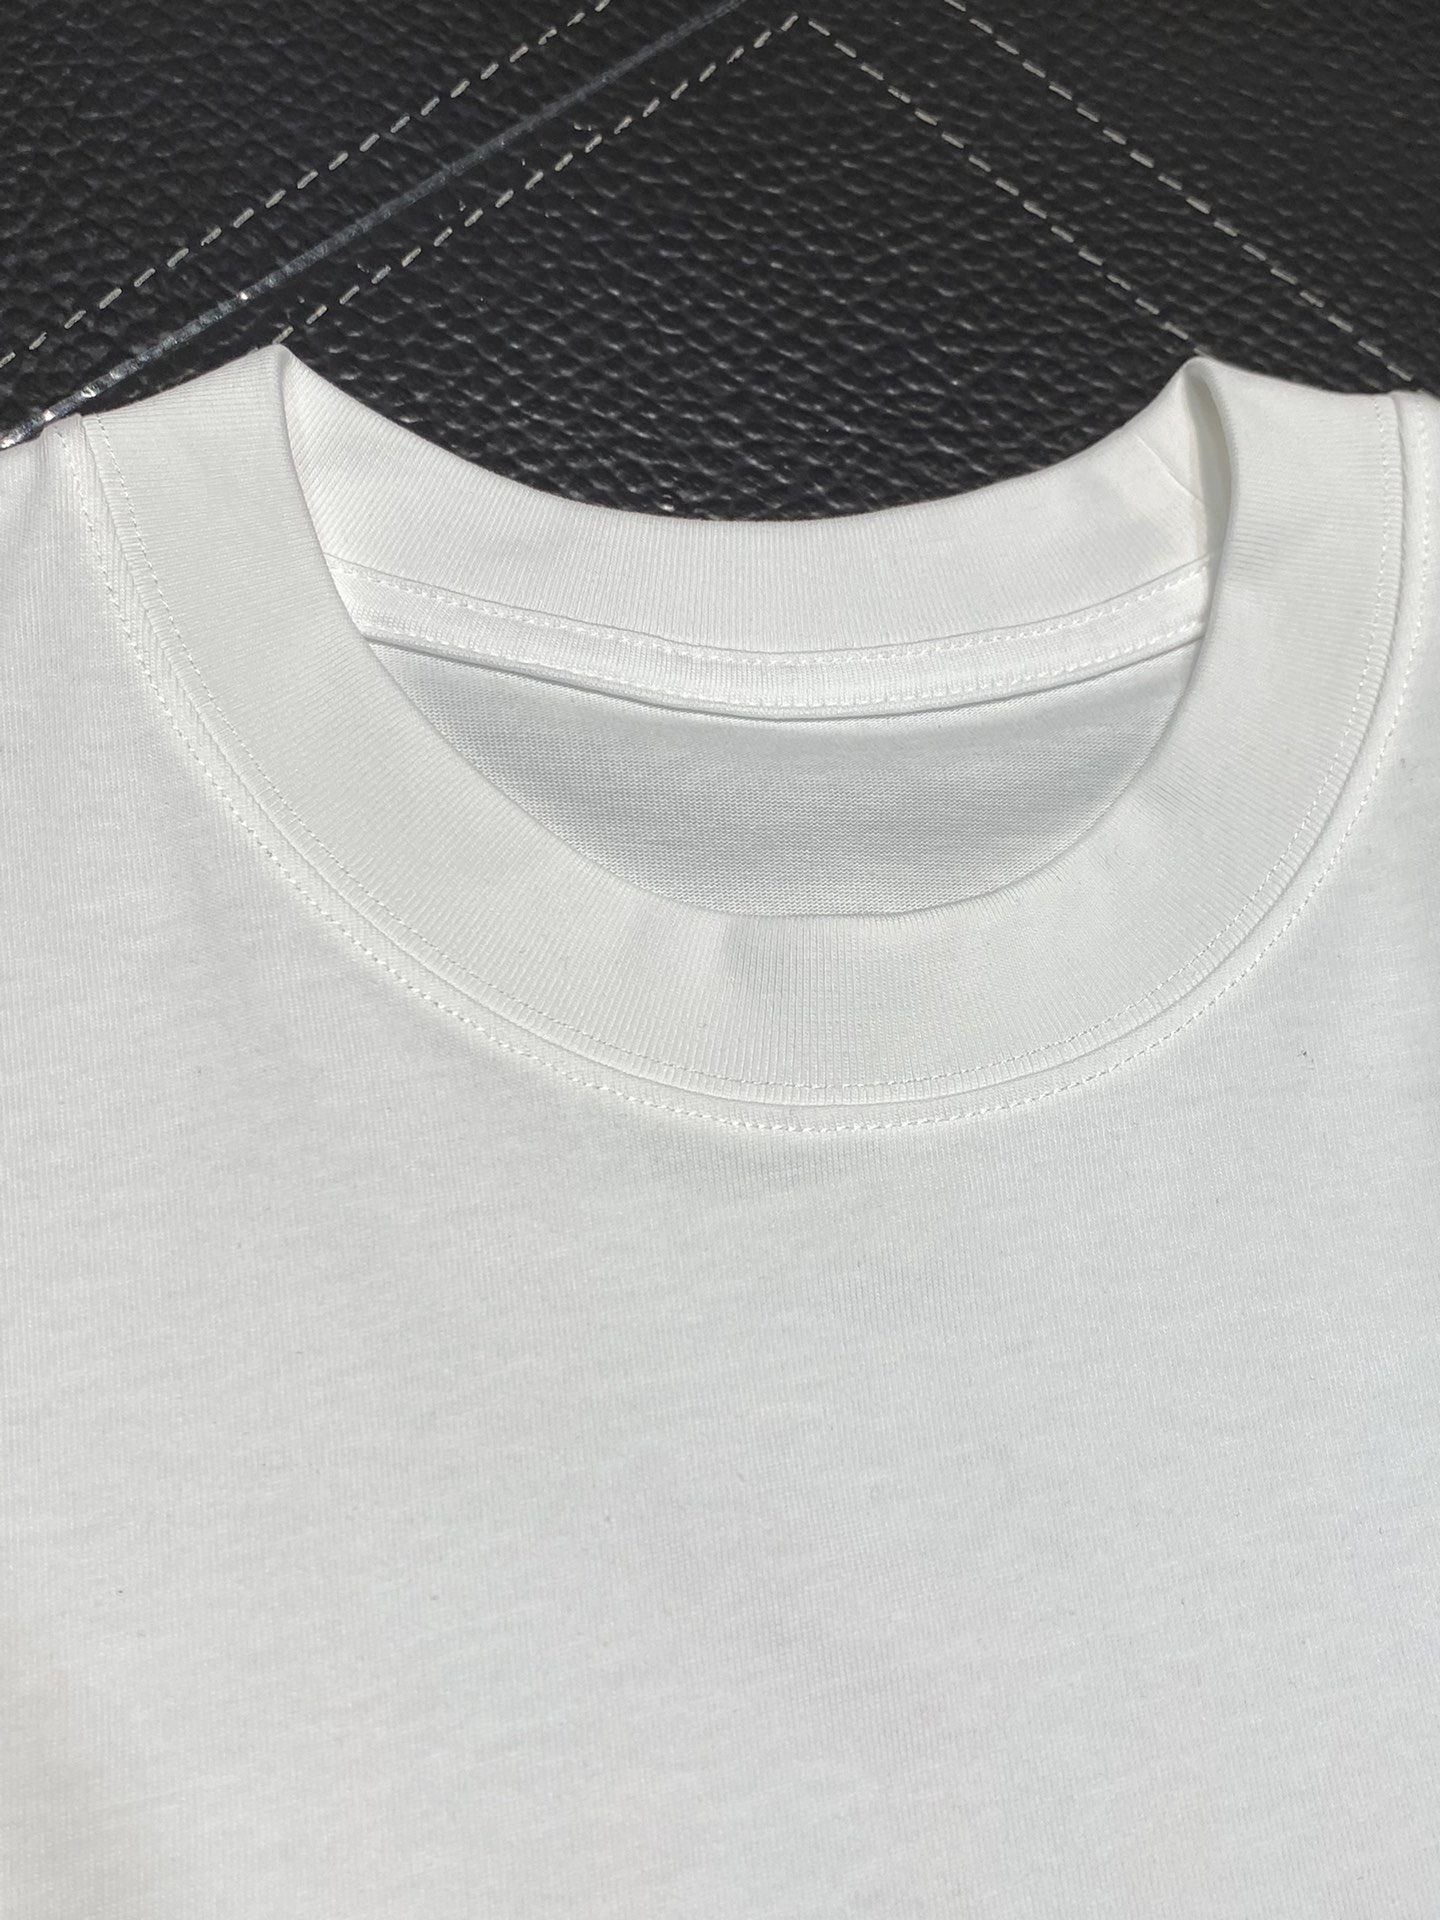 超激得の新品 ヴェトモン スカルtシャツスーパーコピートップス 短袖 プリント 純綿 品質保証 メンズ ホワイト_4